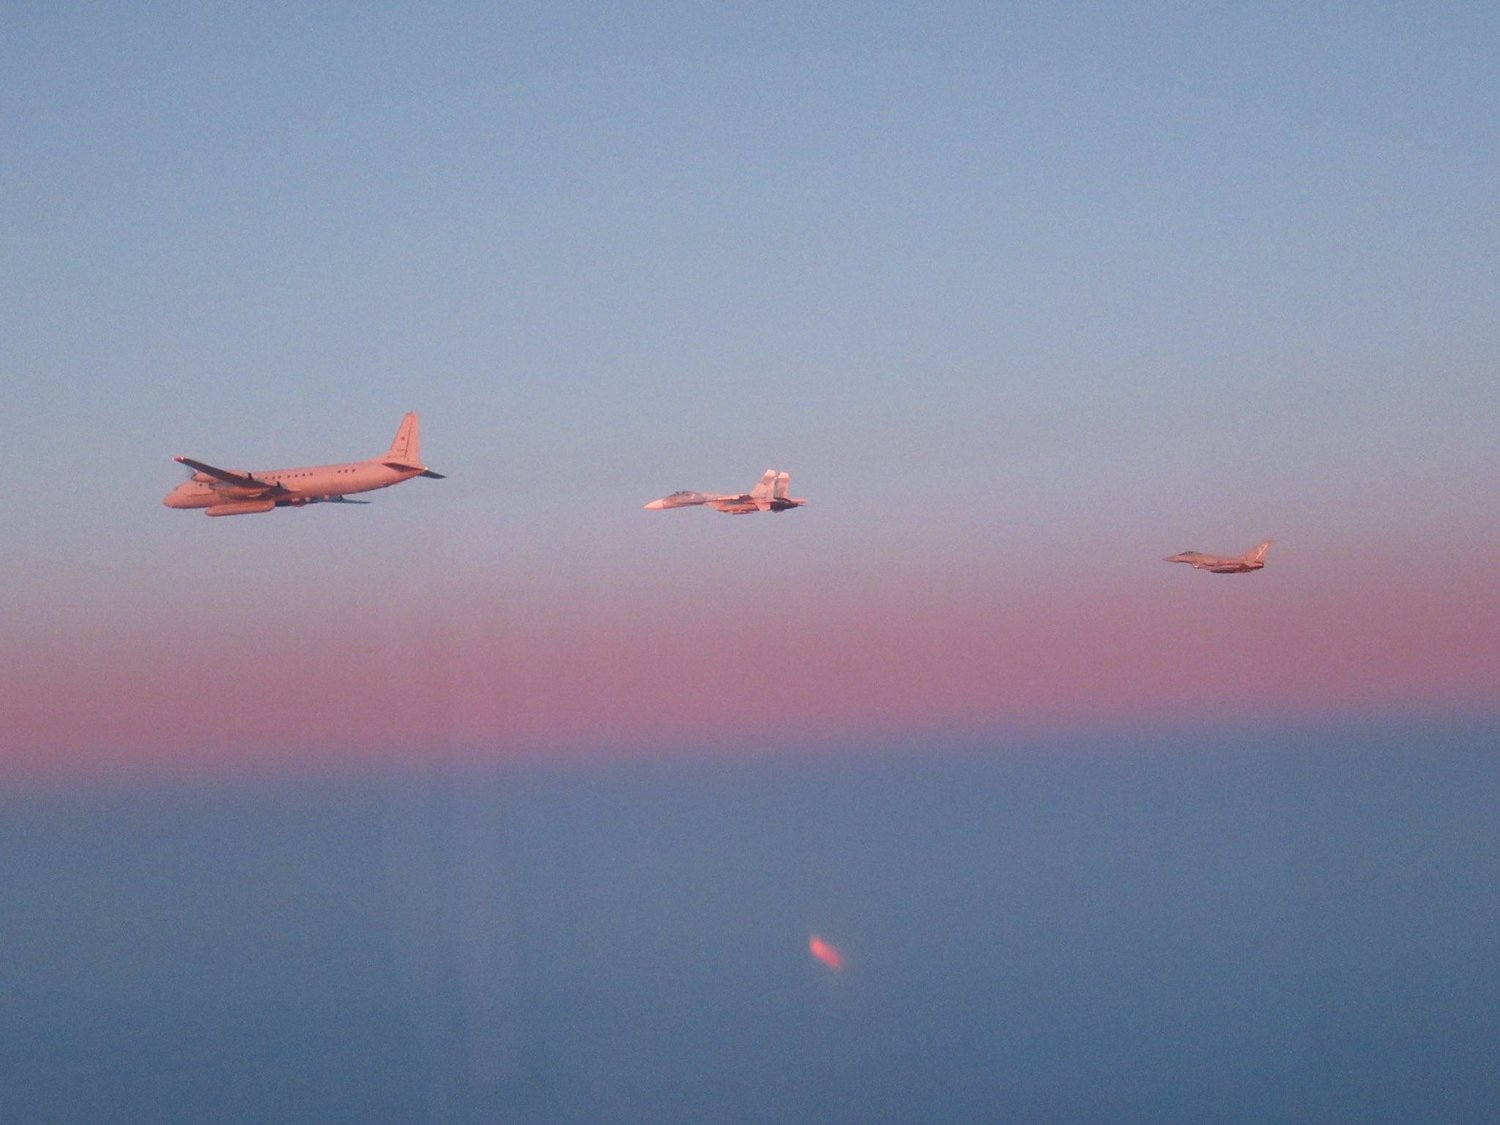 طائرات المملكة المتحدة تنتشر بوصفها جزءاً من مهمة المراقبة الجوية للحلف فوق سماء دول البلطيق (تويتر)